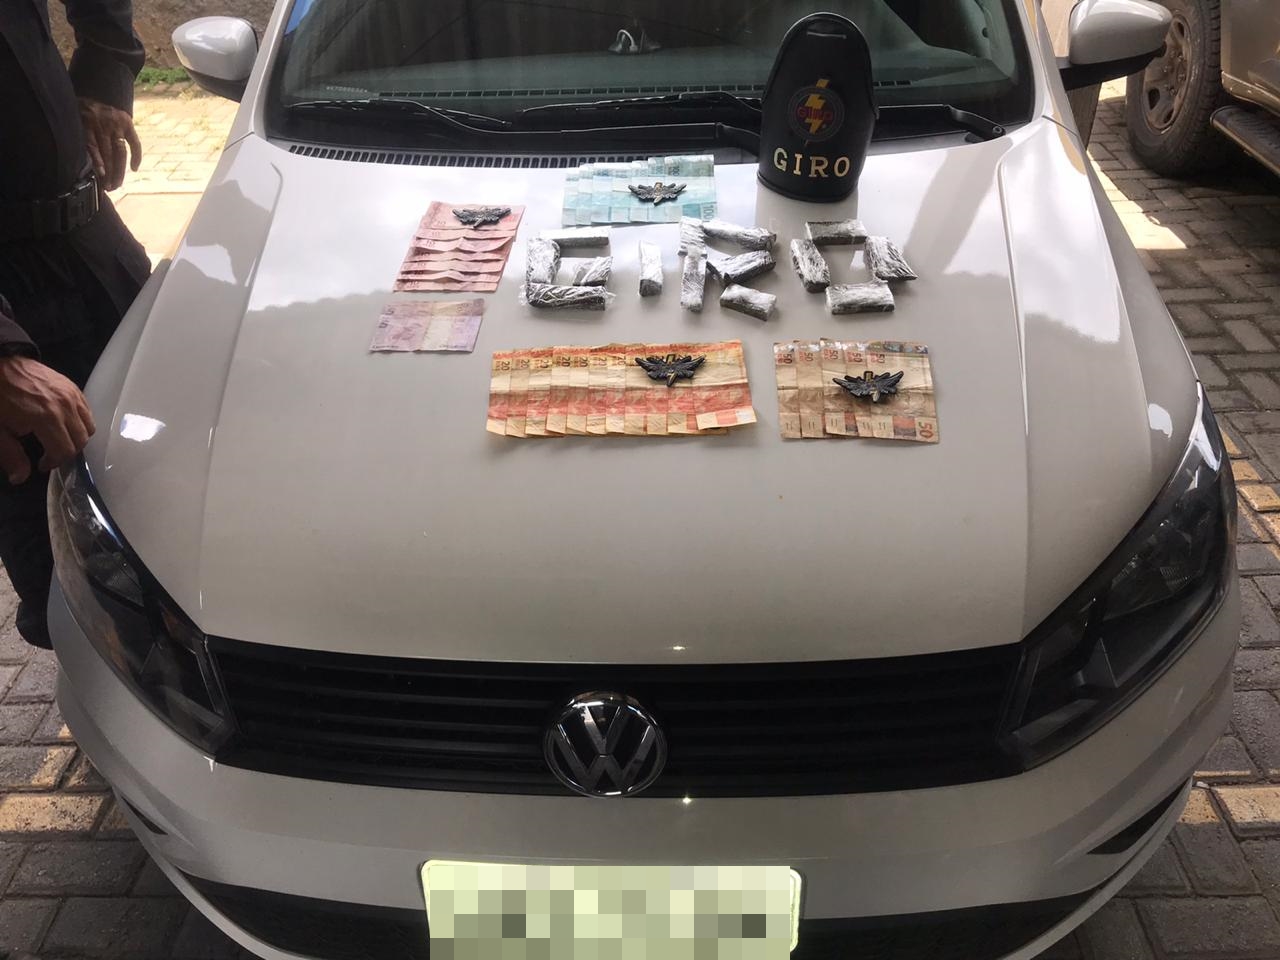 Um suposto motorista de aplicativo, de 30 anos, foi preso suspeito de tráfico de drogas em Goiânia, na manhã desta sexta-feira (3). (Foto: Divulgação/PM)